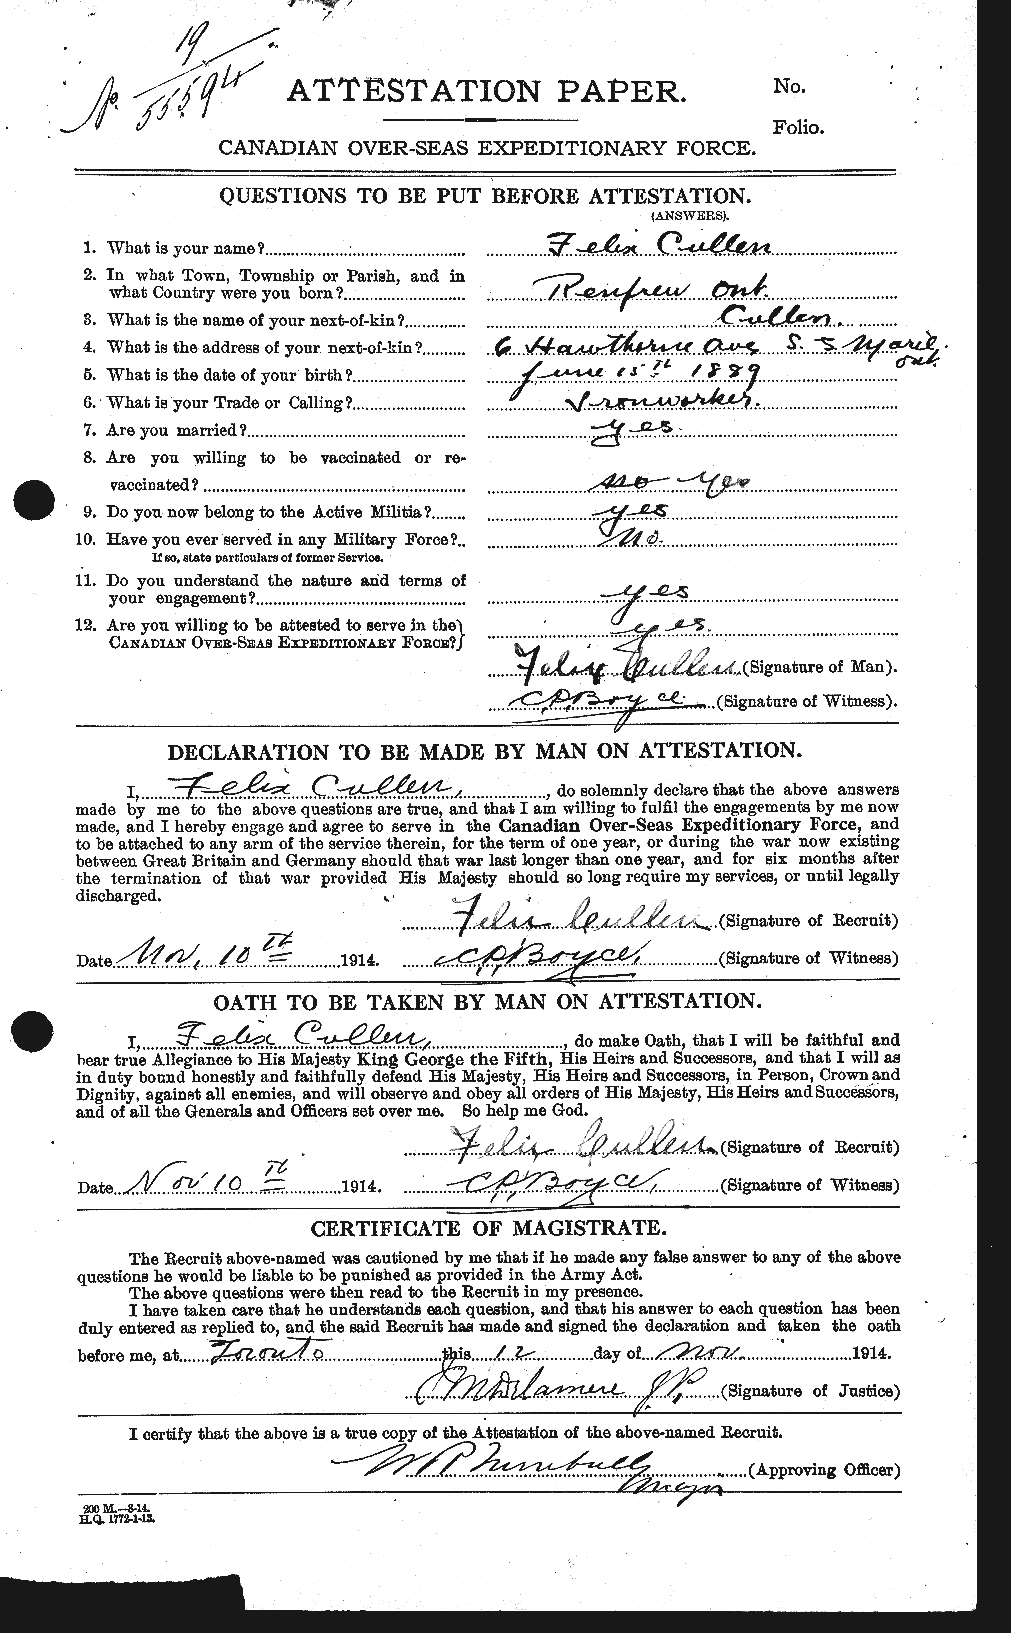 Dossiers du Personnel de la Première Guerre mondiale - CEC 065661a